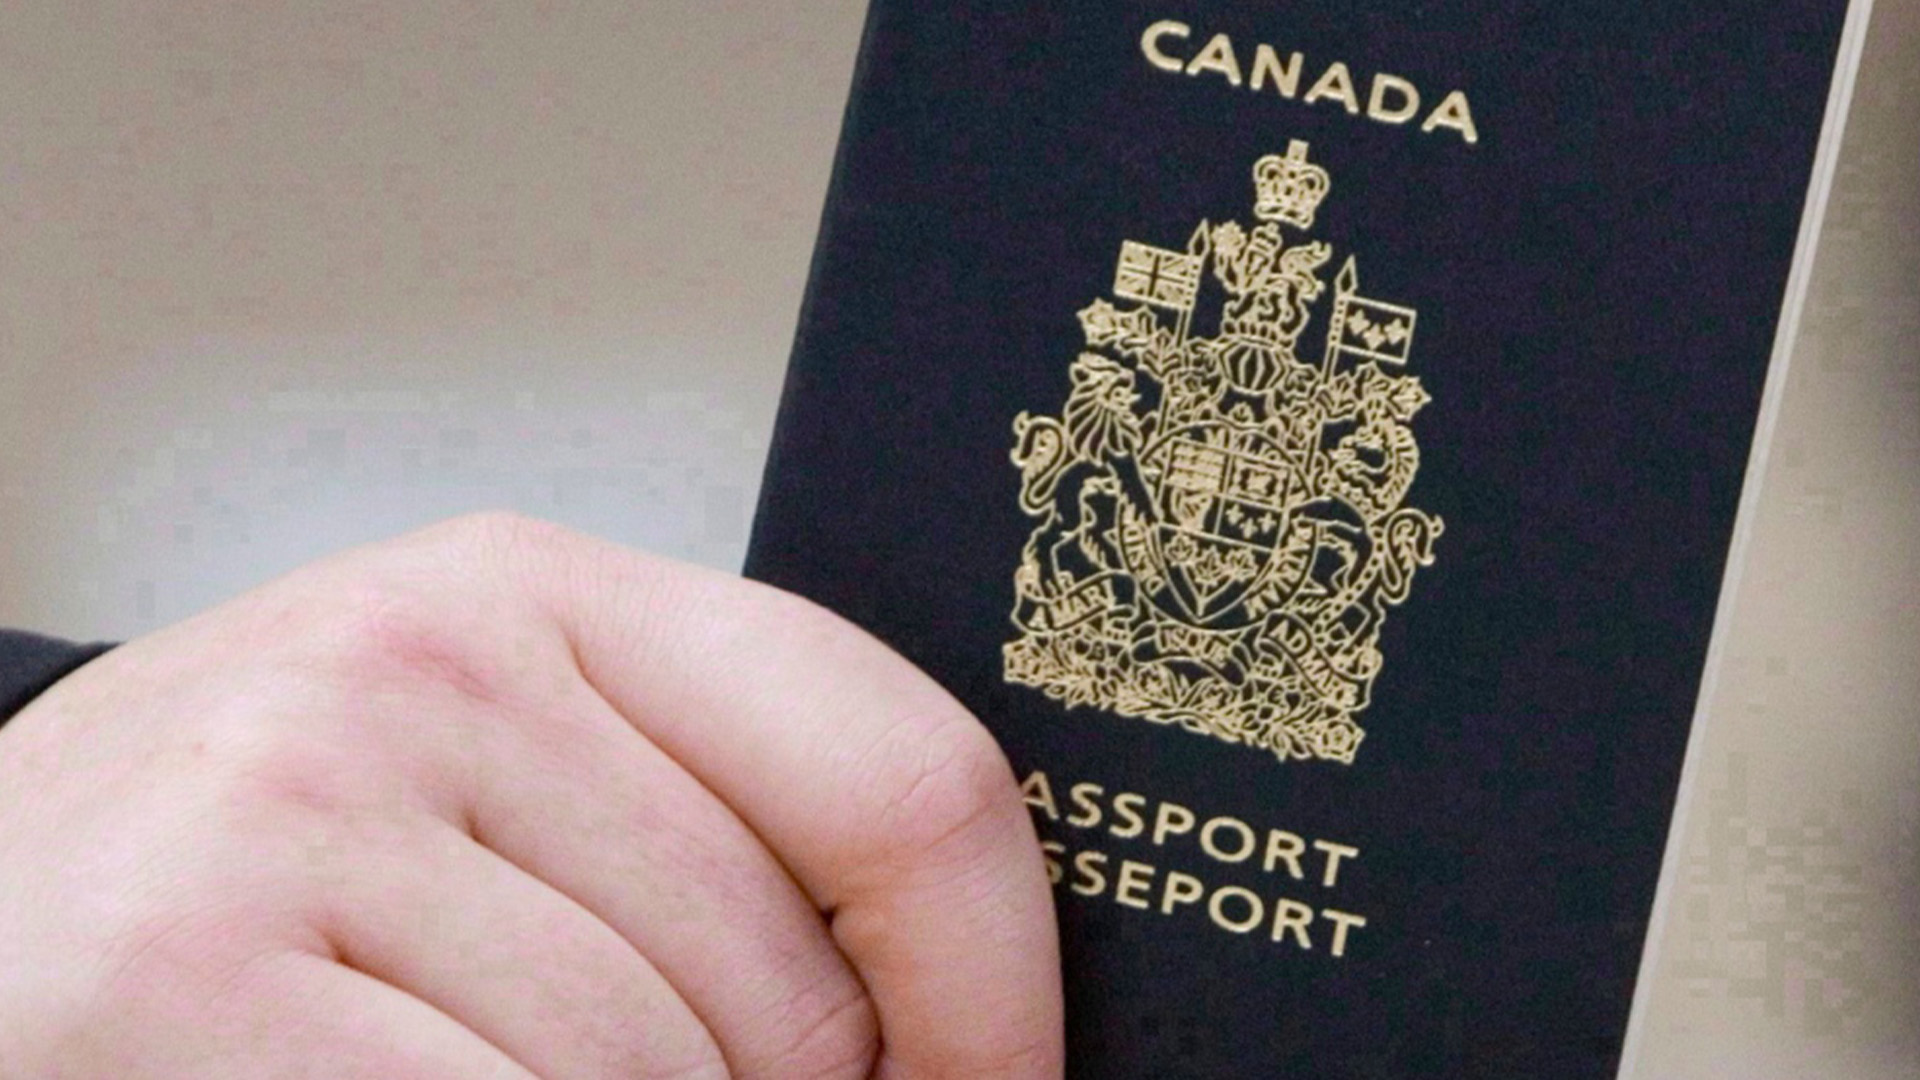 Ceux qui ont des besoins de voyage imminents ou urgents peuvent montrer des preuves de plans de voyage à venir et obtenir leur passeport rapidement.